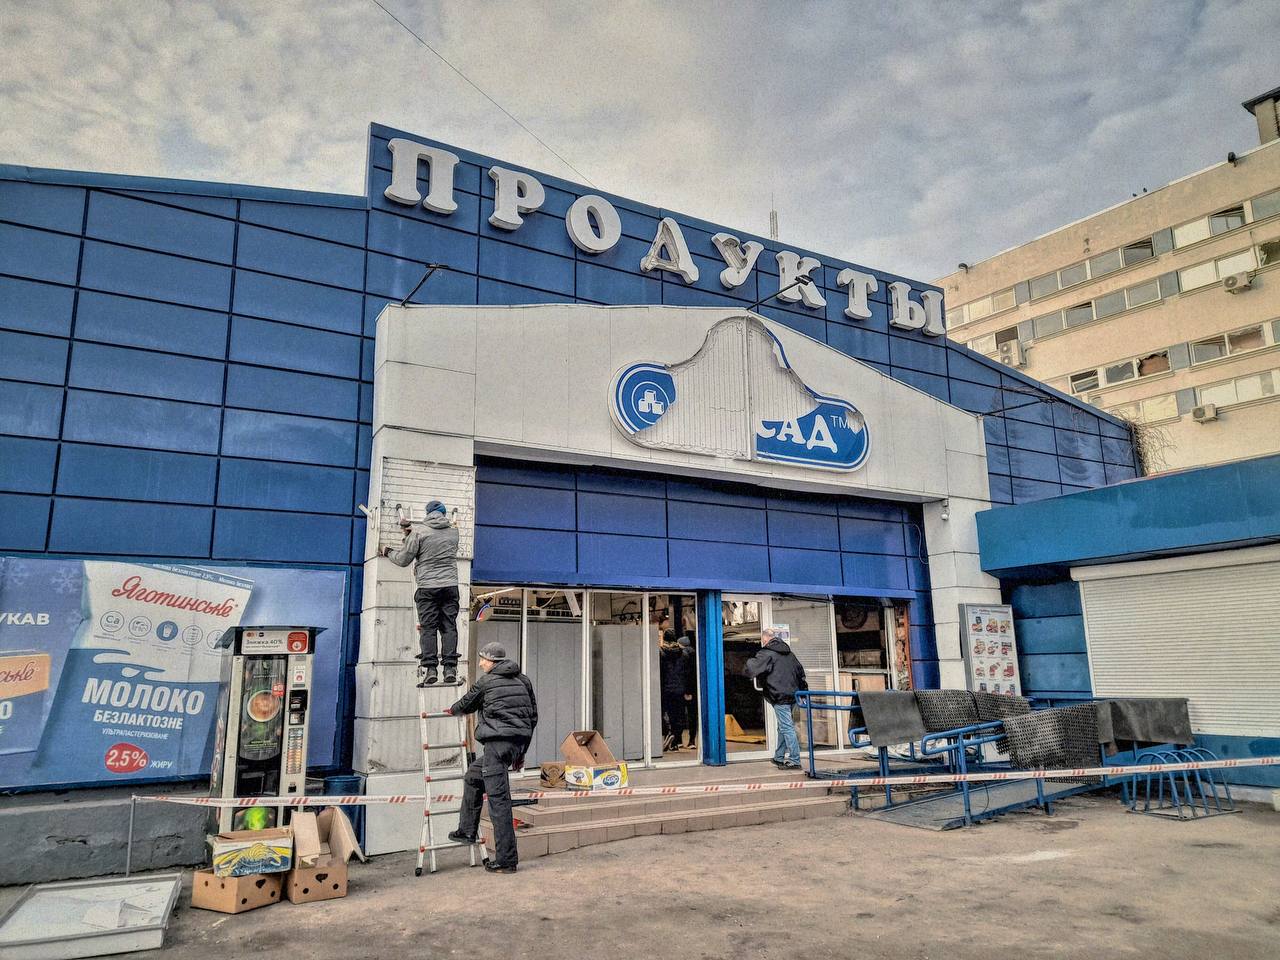 Пошкоджена будівля супермаркету "Посад" у Харкові